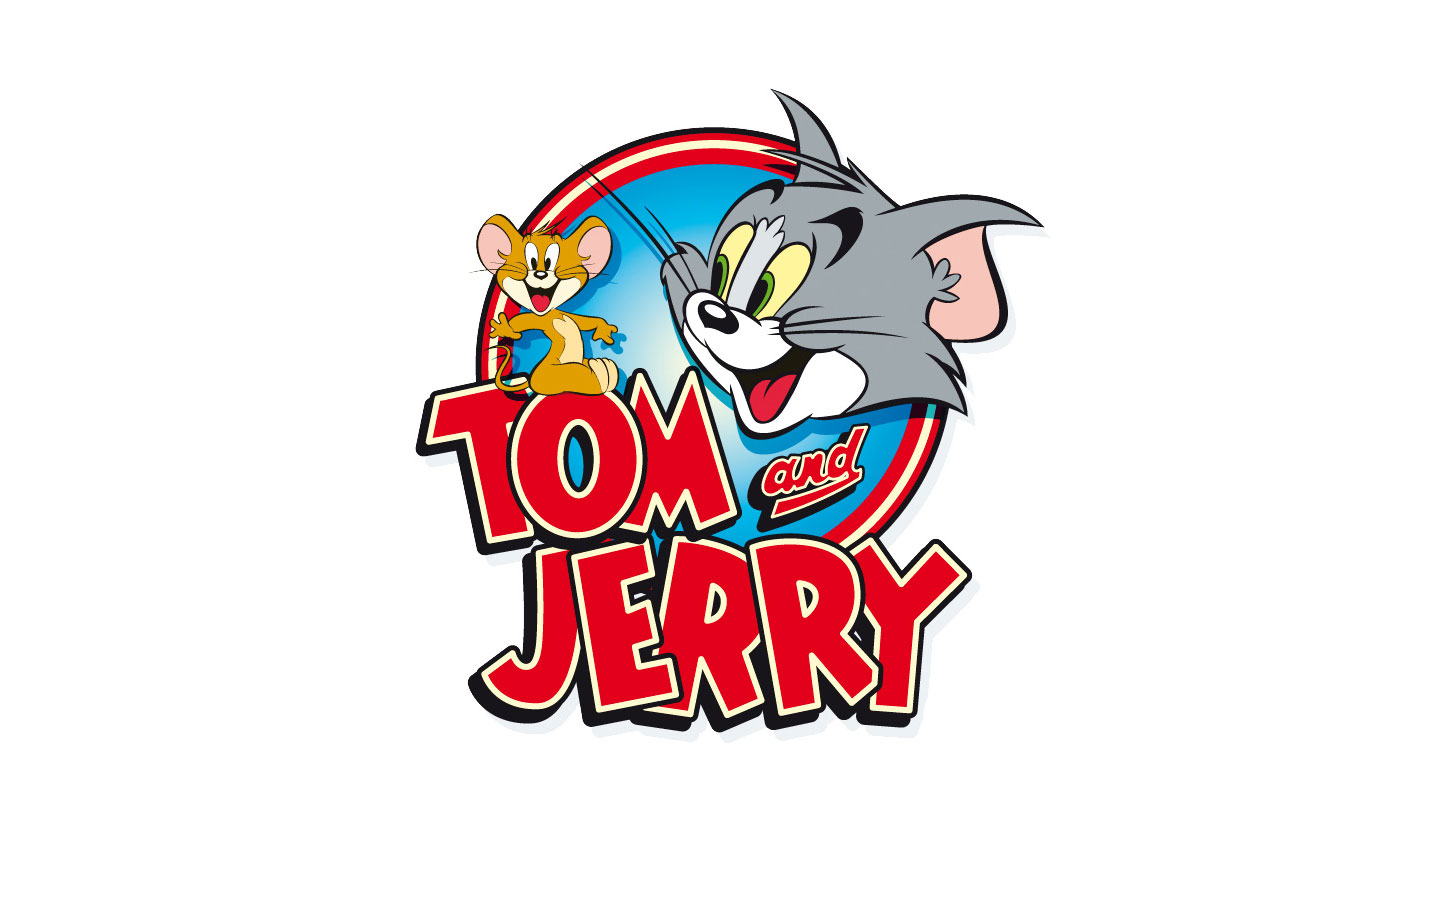 Tải hình ảnh Tom và Jerry đẹp